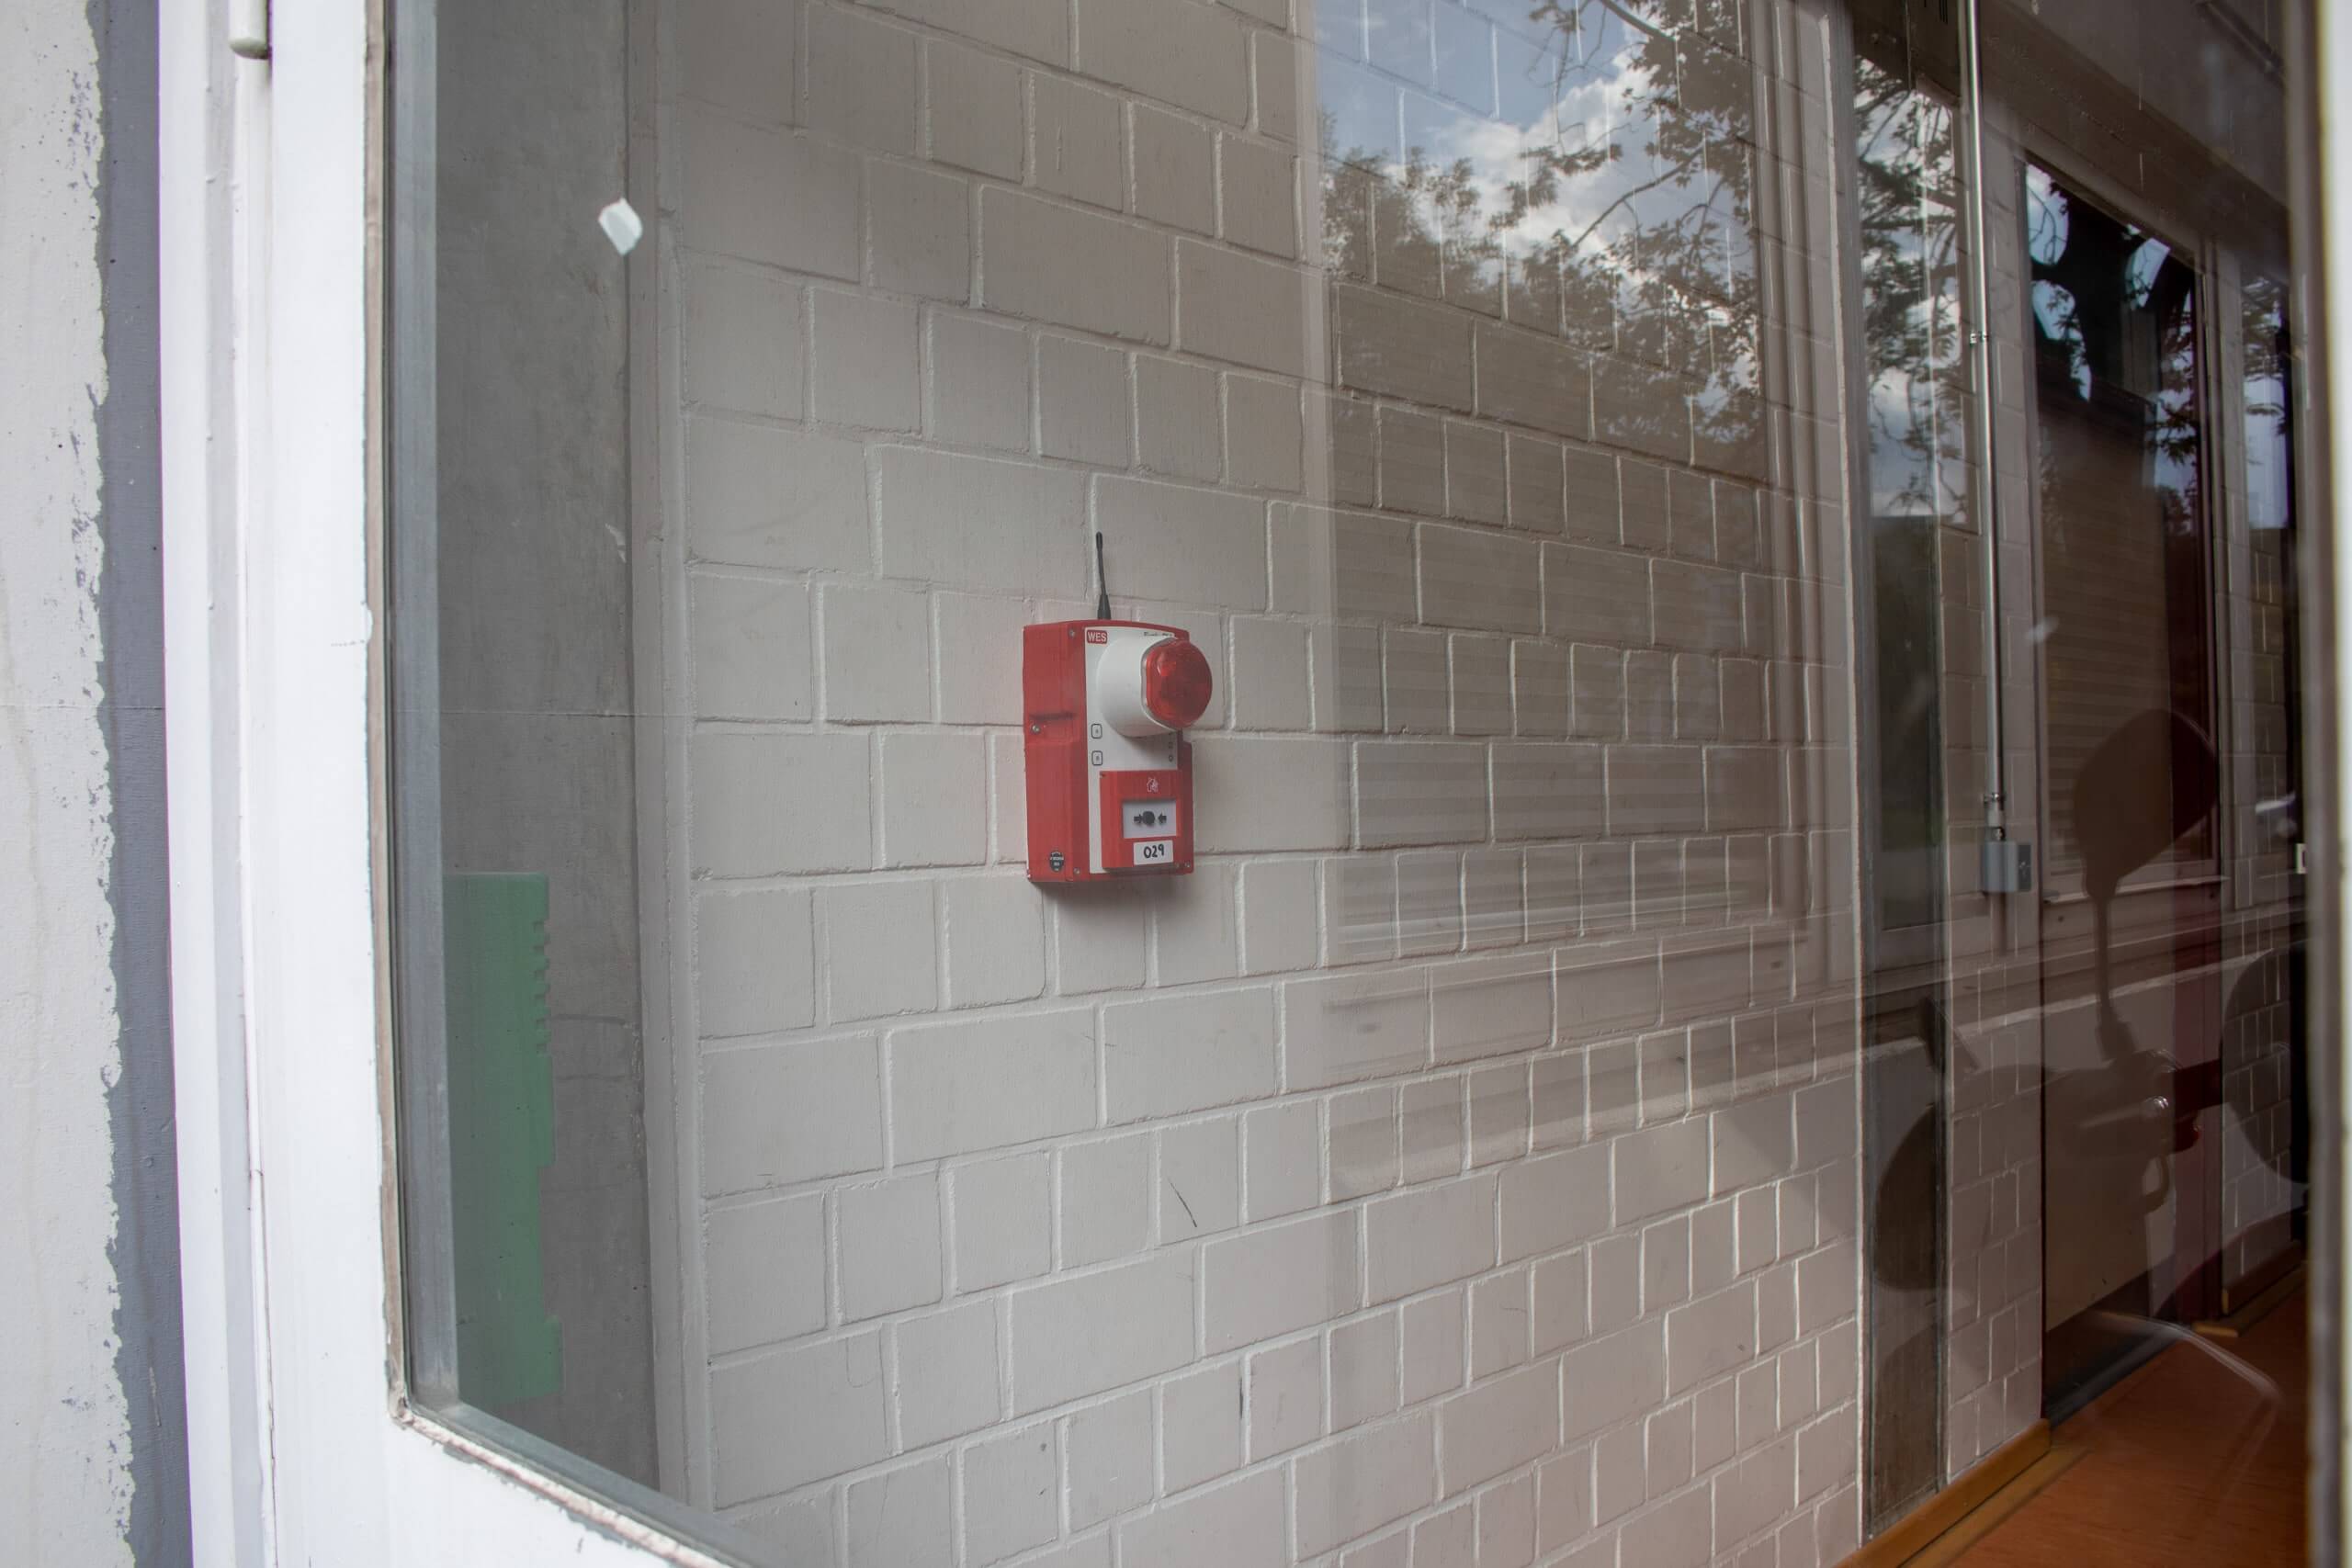 Brandschutz Schule mit mobilen Druckknopfmeldern